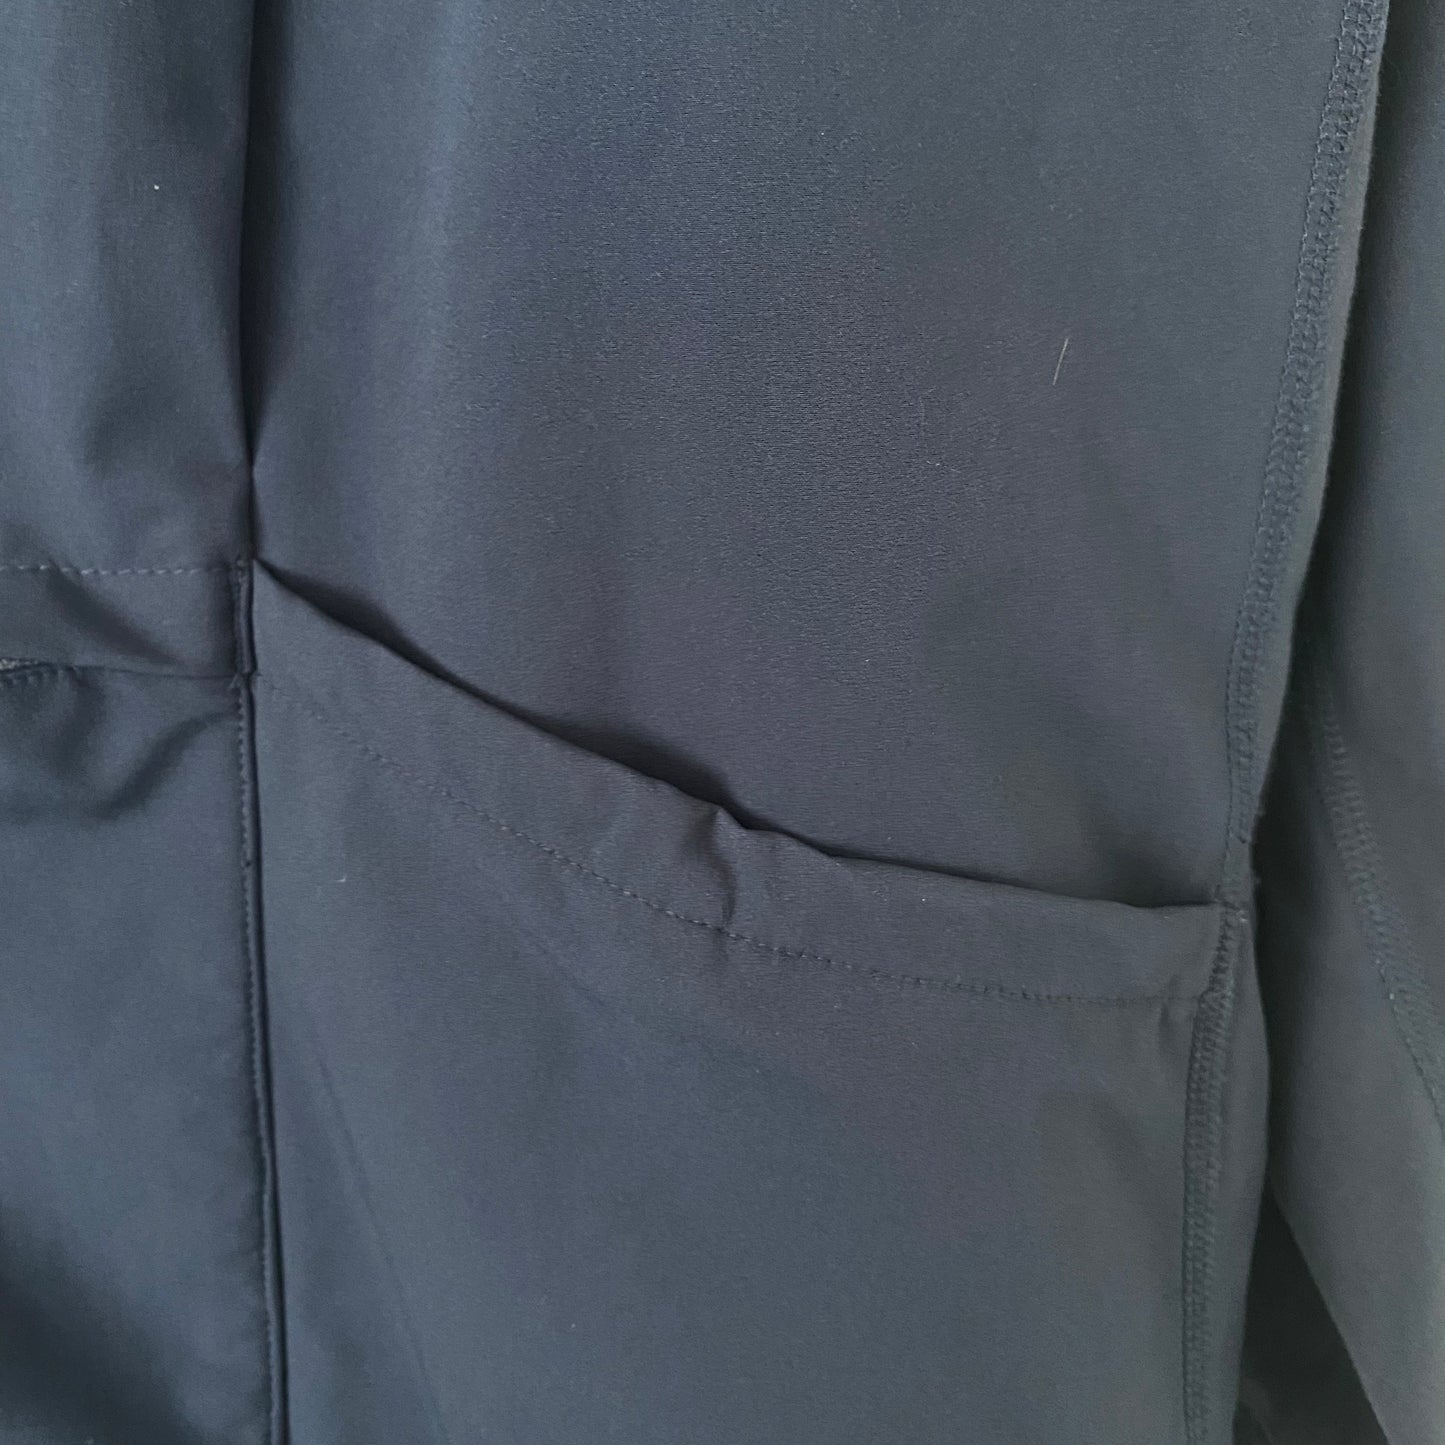 Rare Lululemon Men’s Jacket Size Large